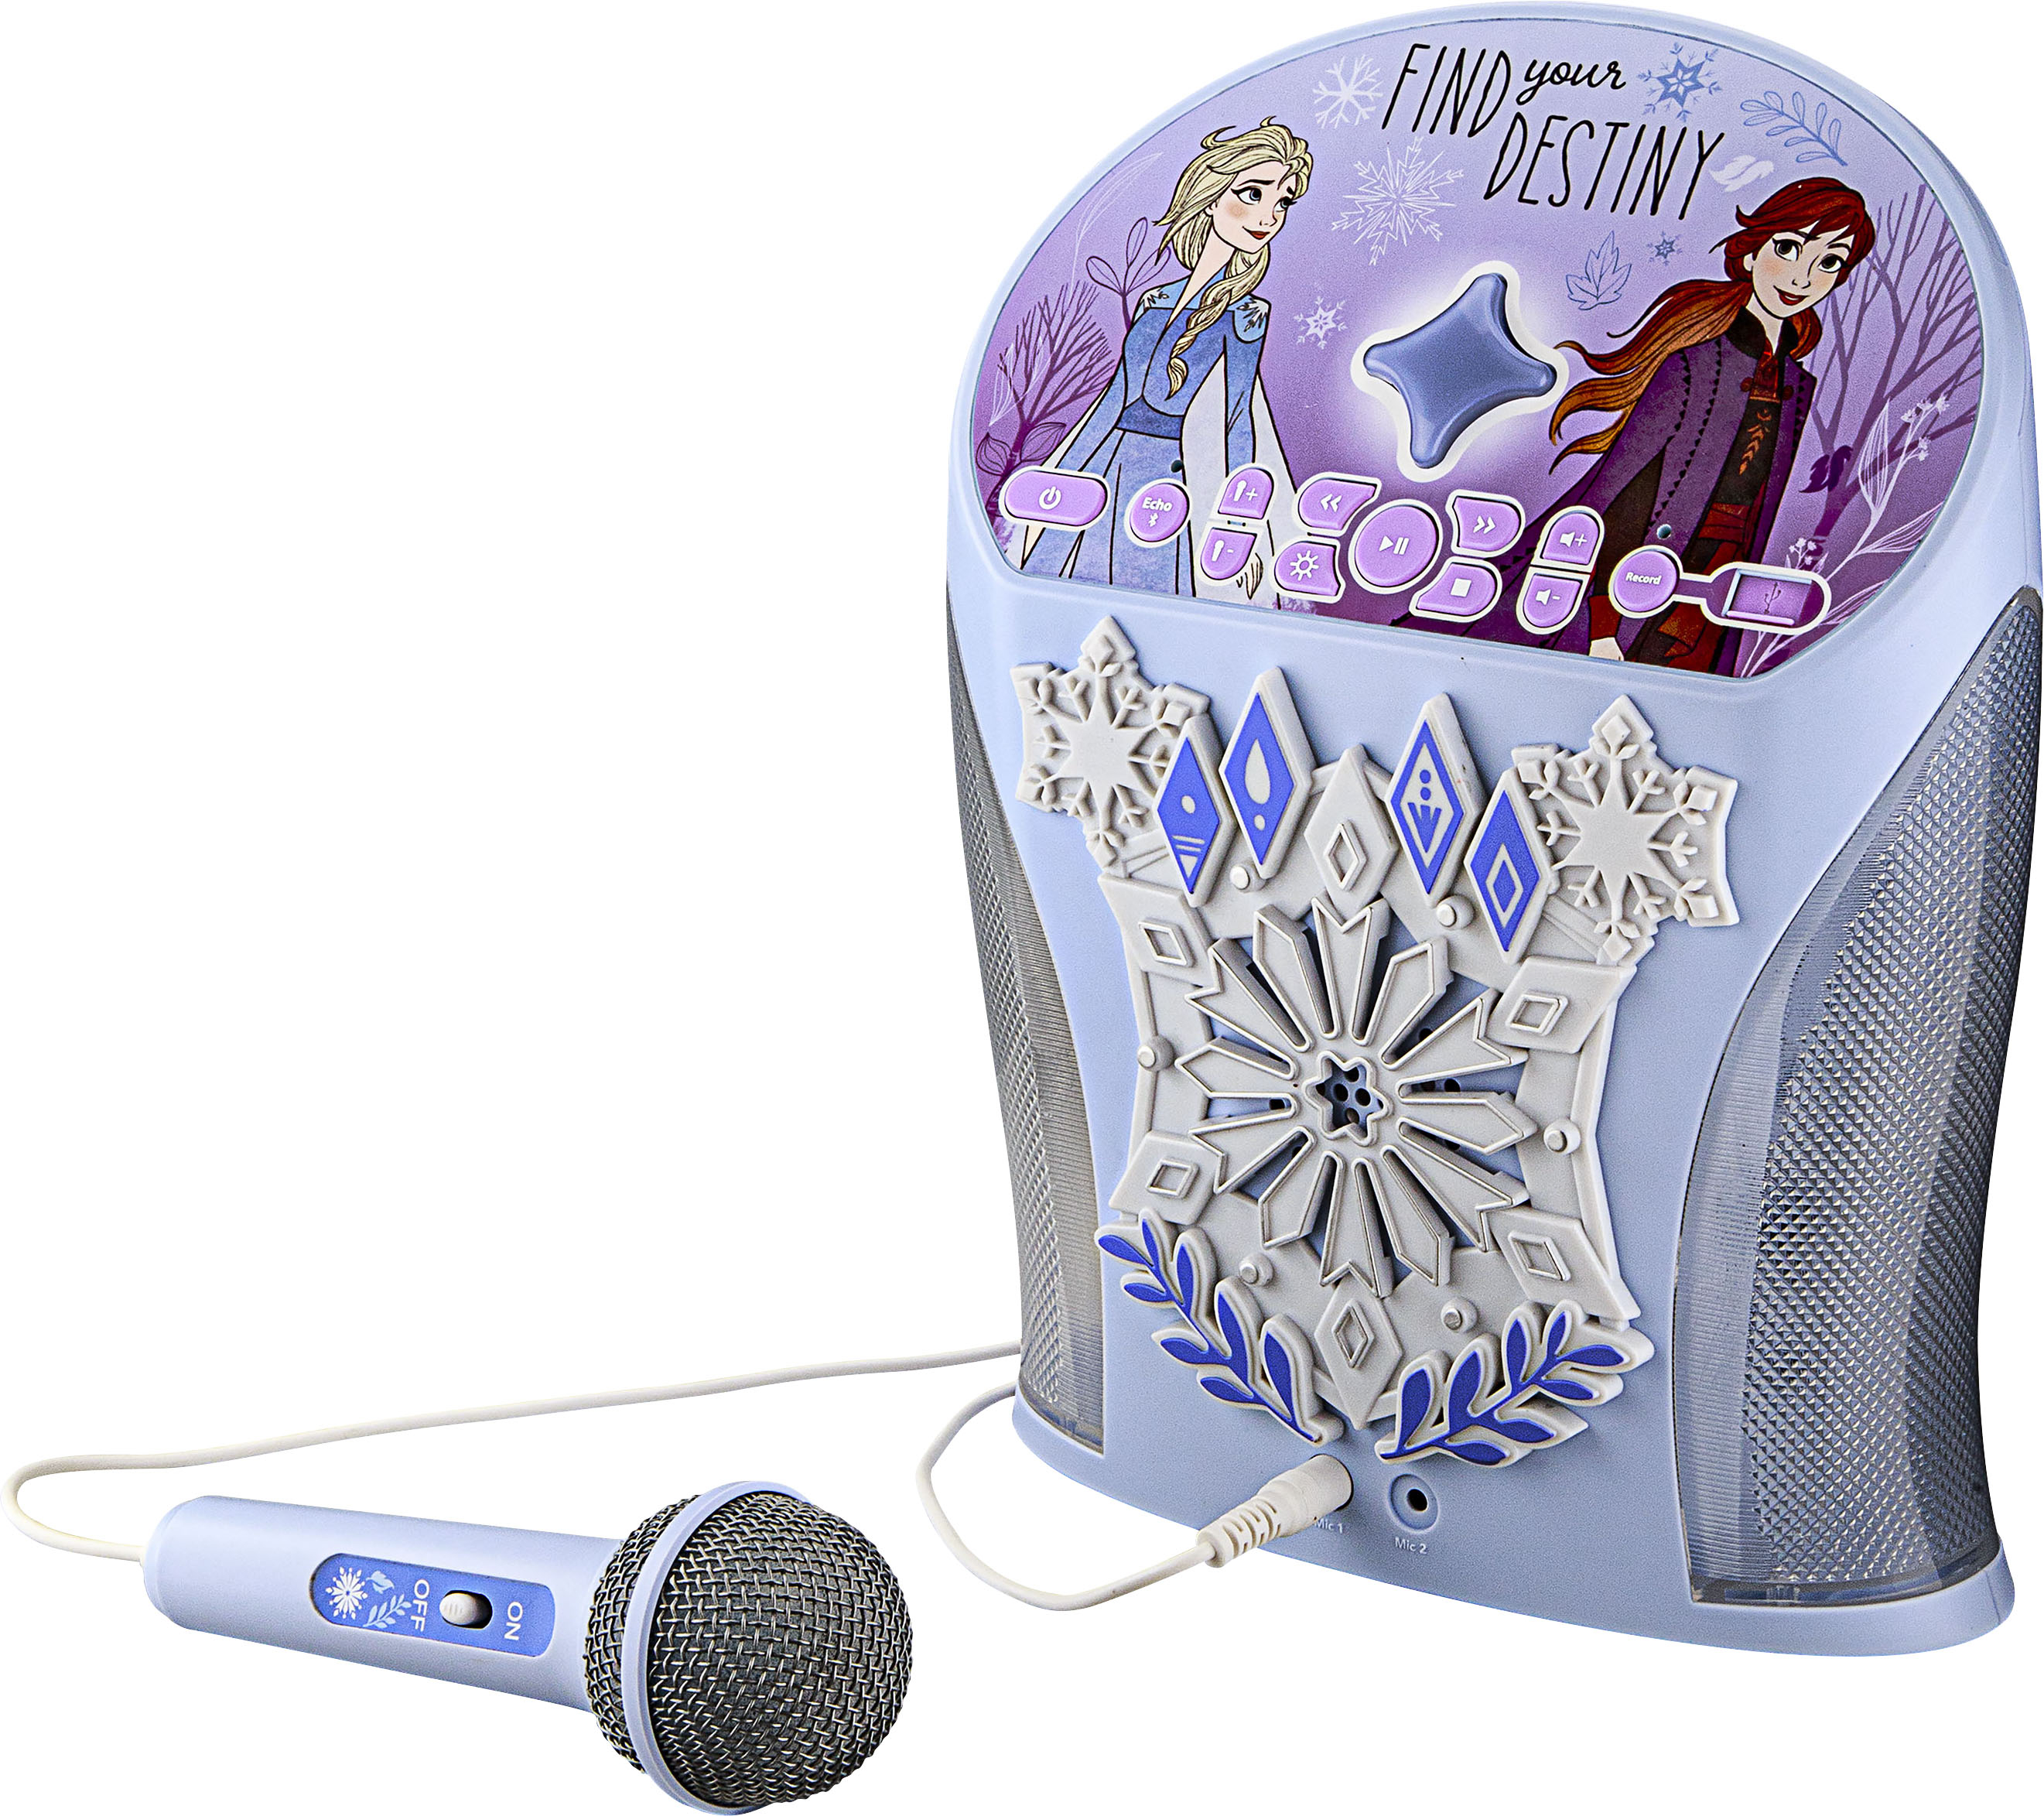 Left View: eKids - Disney Frozen Bluetooth Karaoke with EZ Link Technology - Light Blue